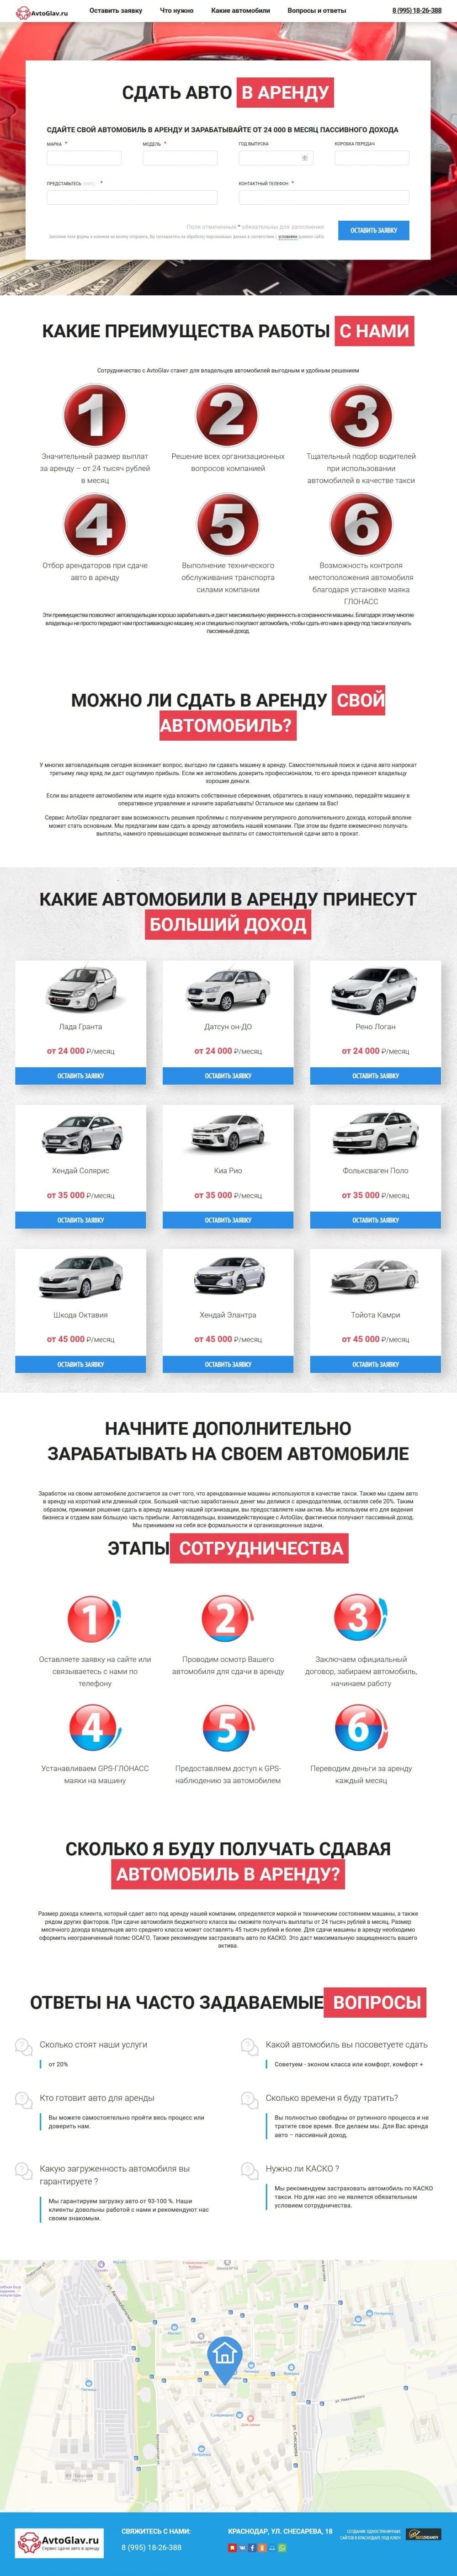 Создание и продвижение лендинга по услуге сдачи машины в аренду - avtoglav.ru